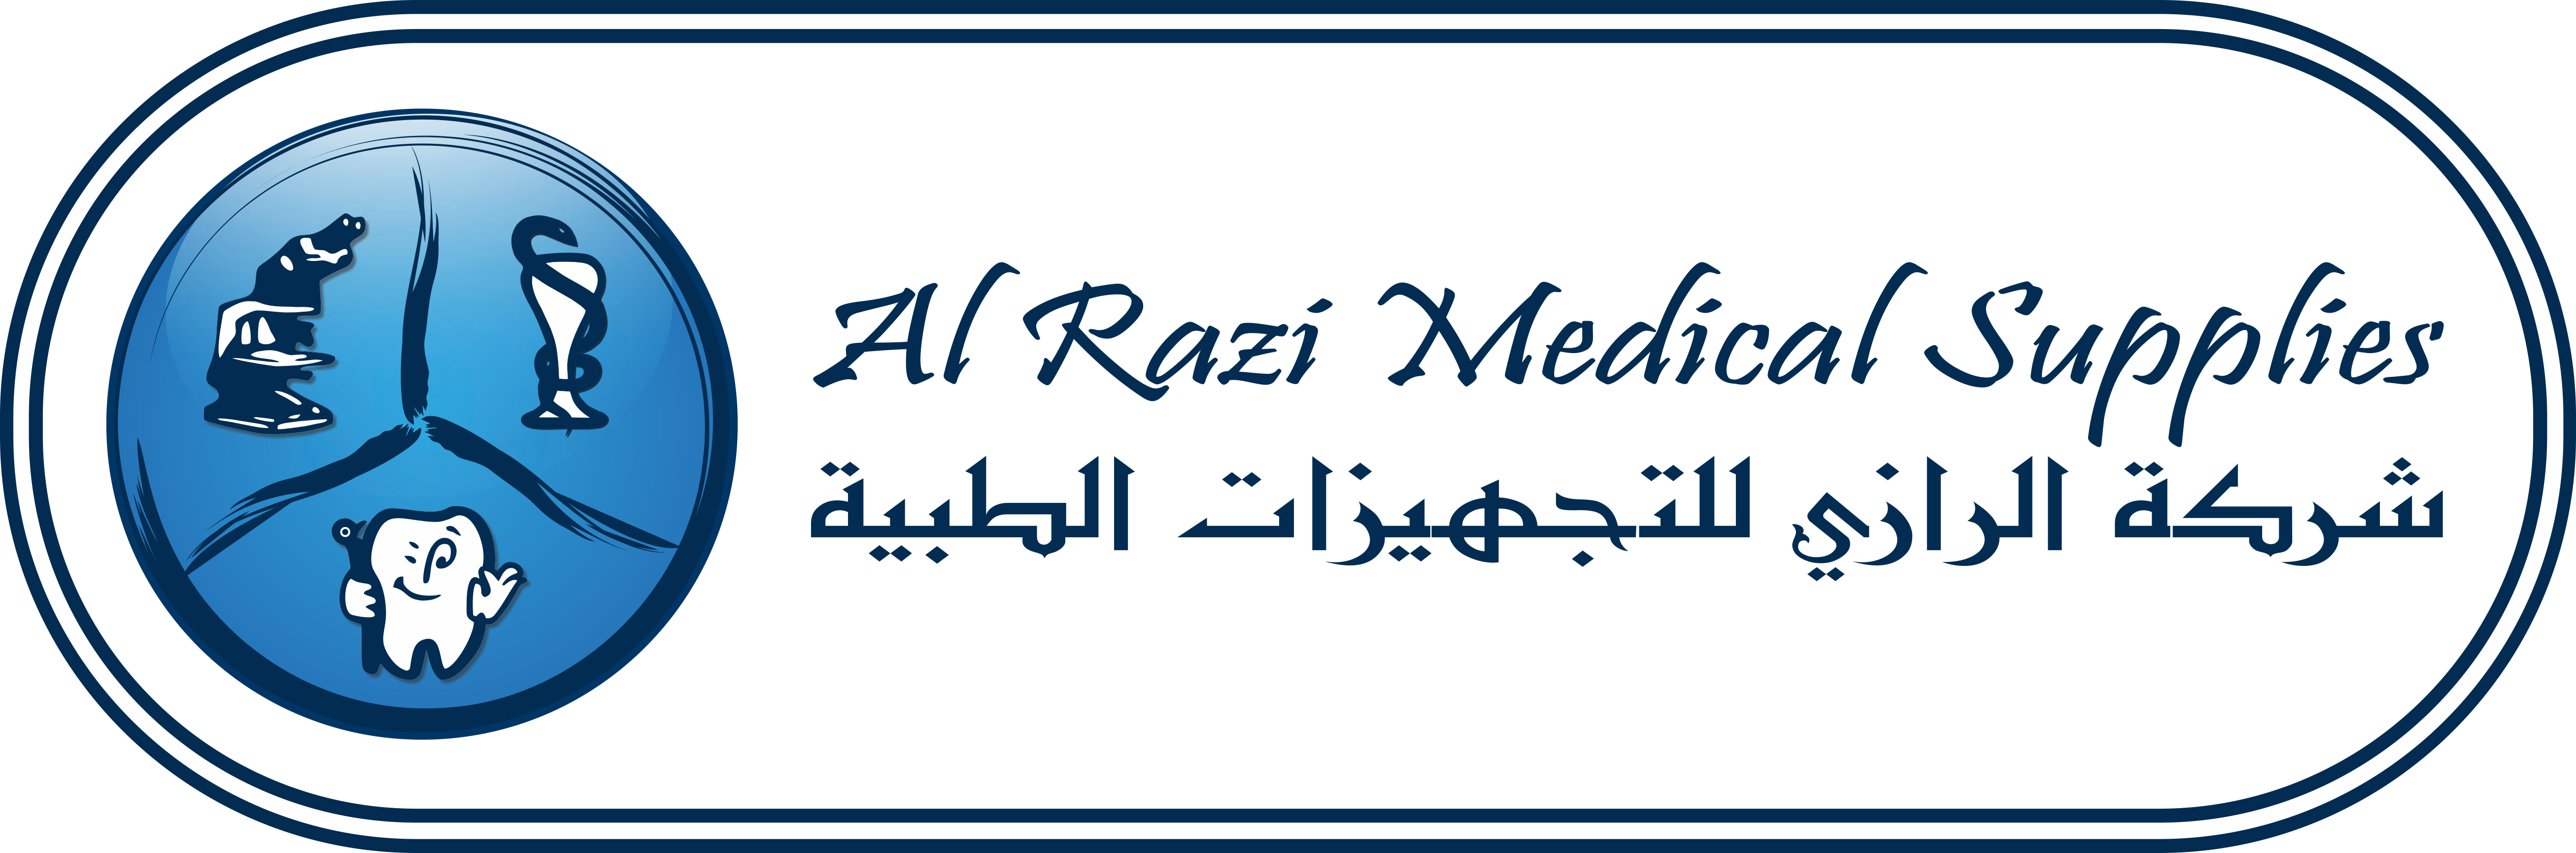 Alrazi Medical Supplies